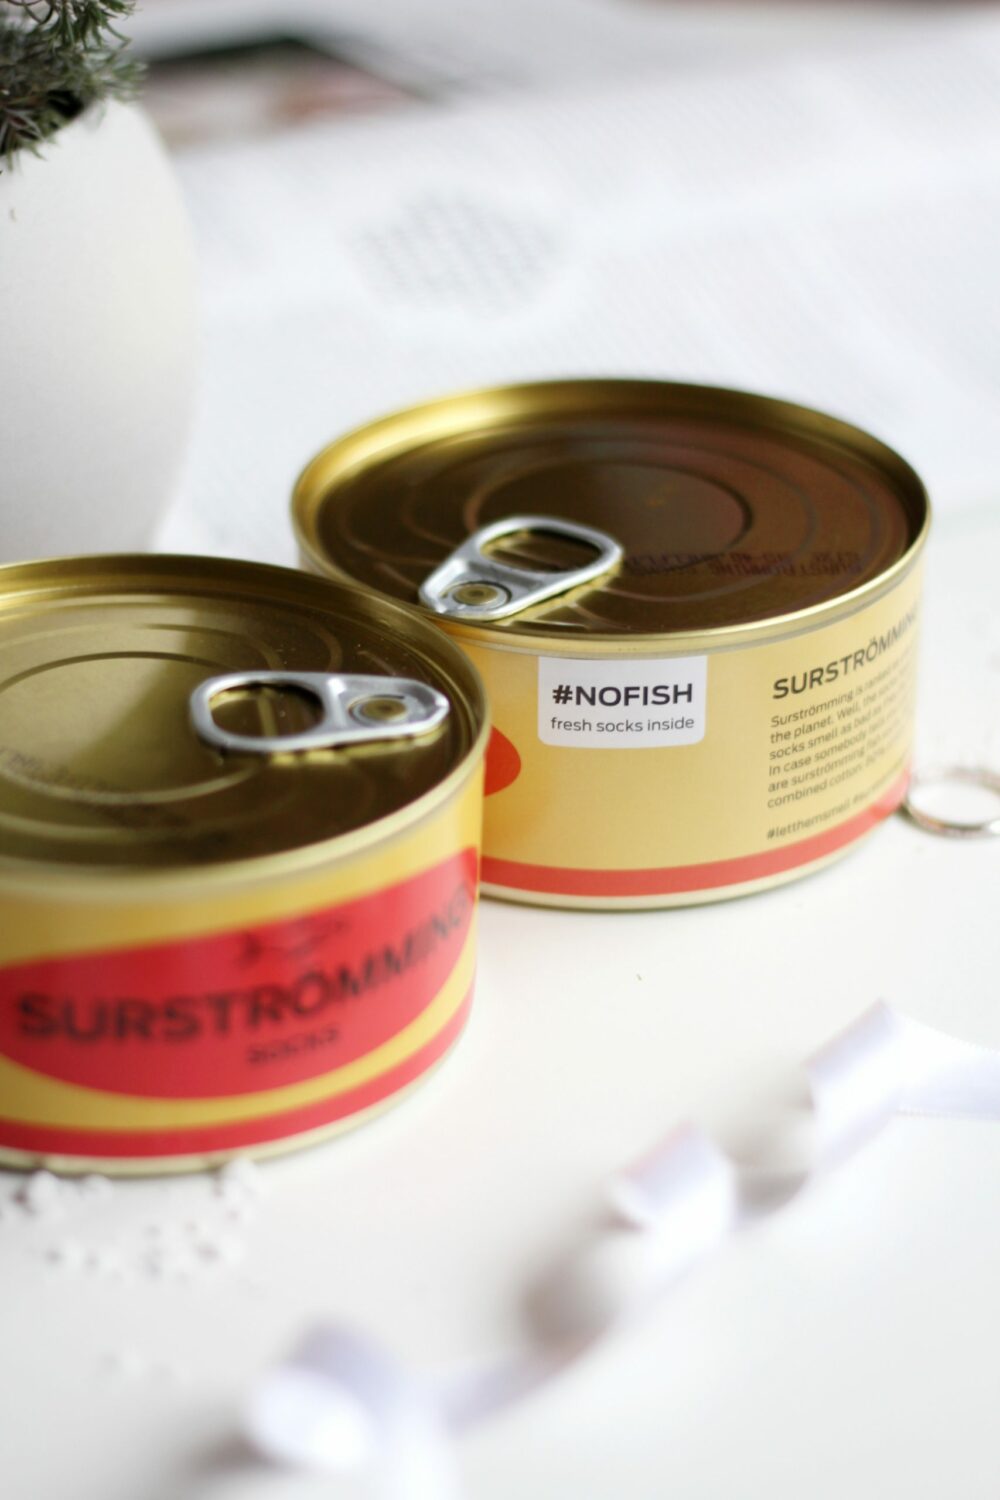 Chaussettes en Conserve Surströmming #nofish (taille 40 - 46, pour